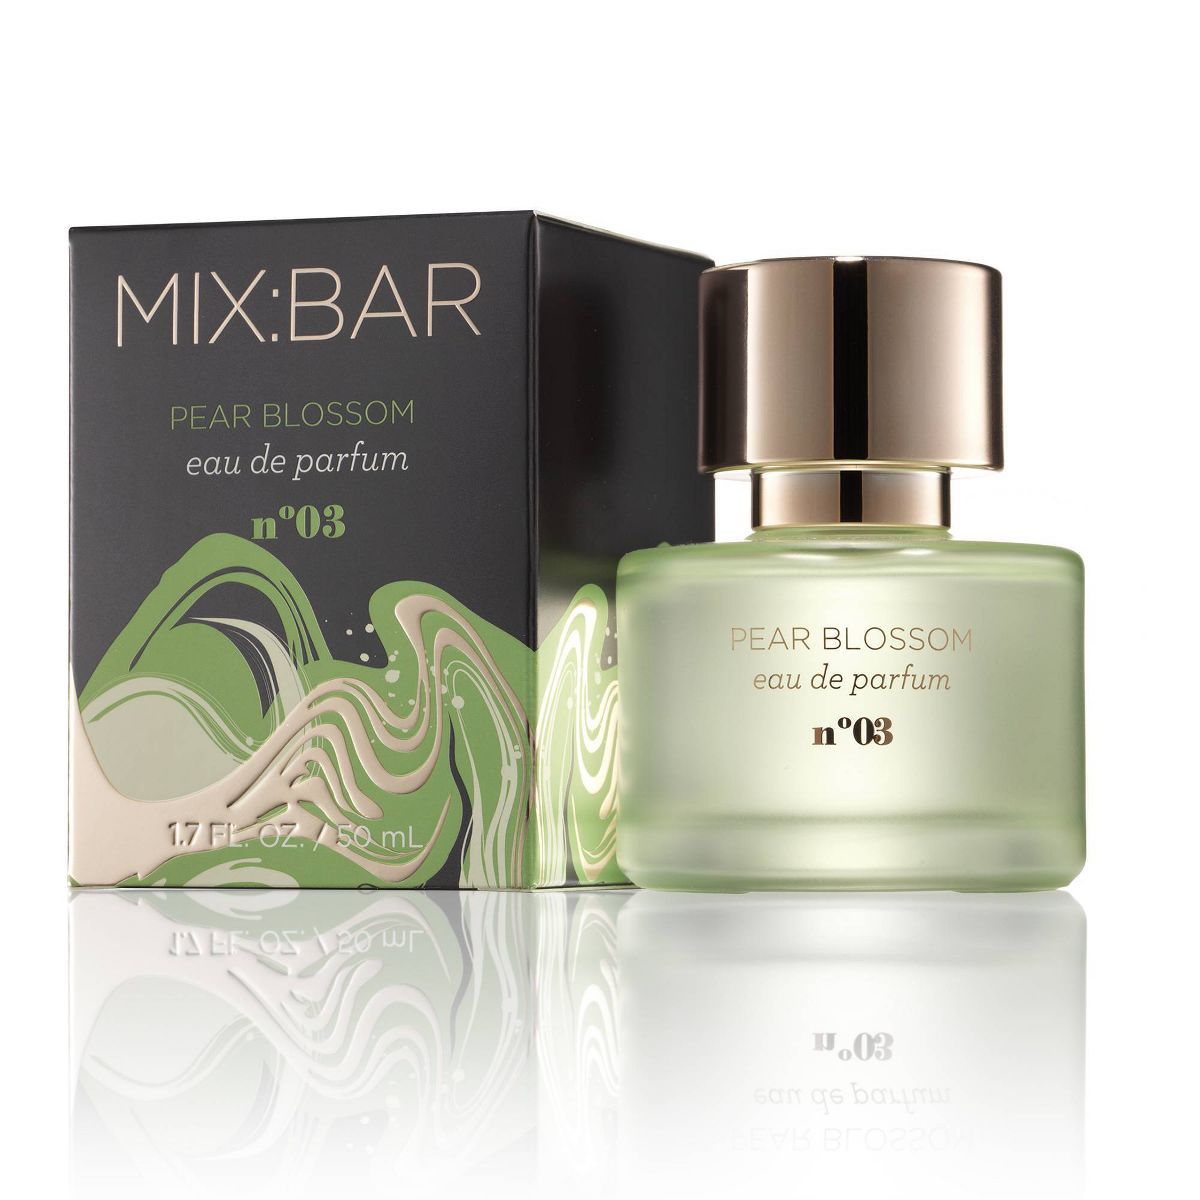 MIX:BAR Pear Blossom Eau De Parfum - Clean Fragrance for Women, Travel Size - 1.7 fl oz | Target